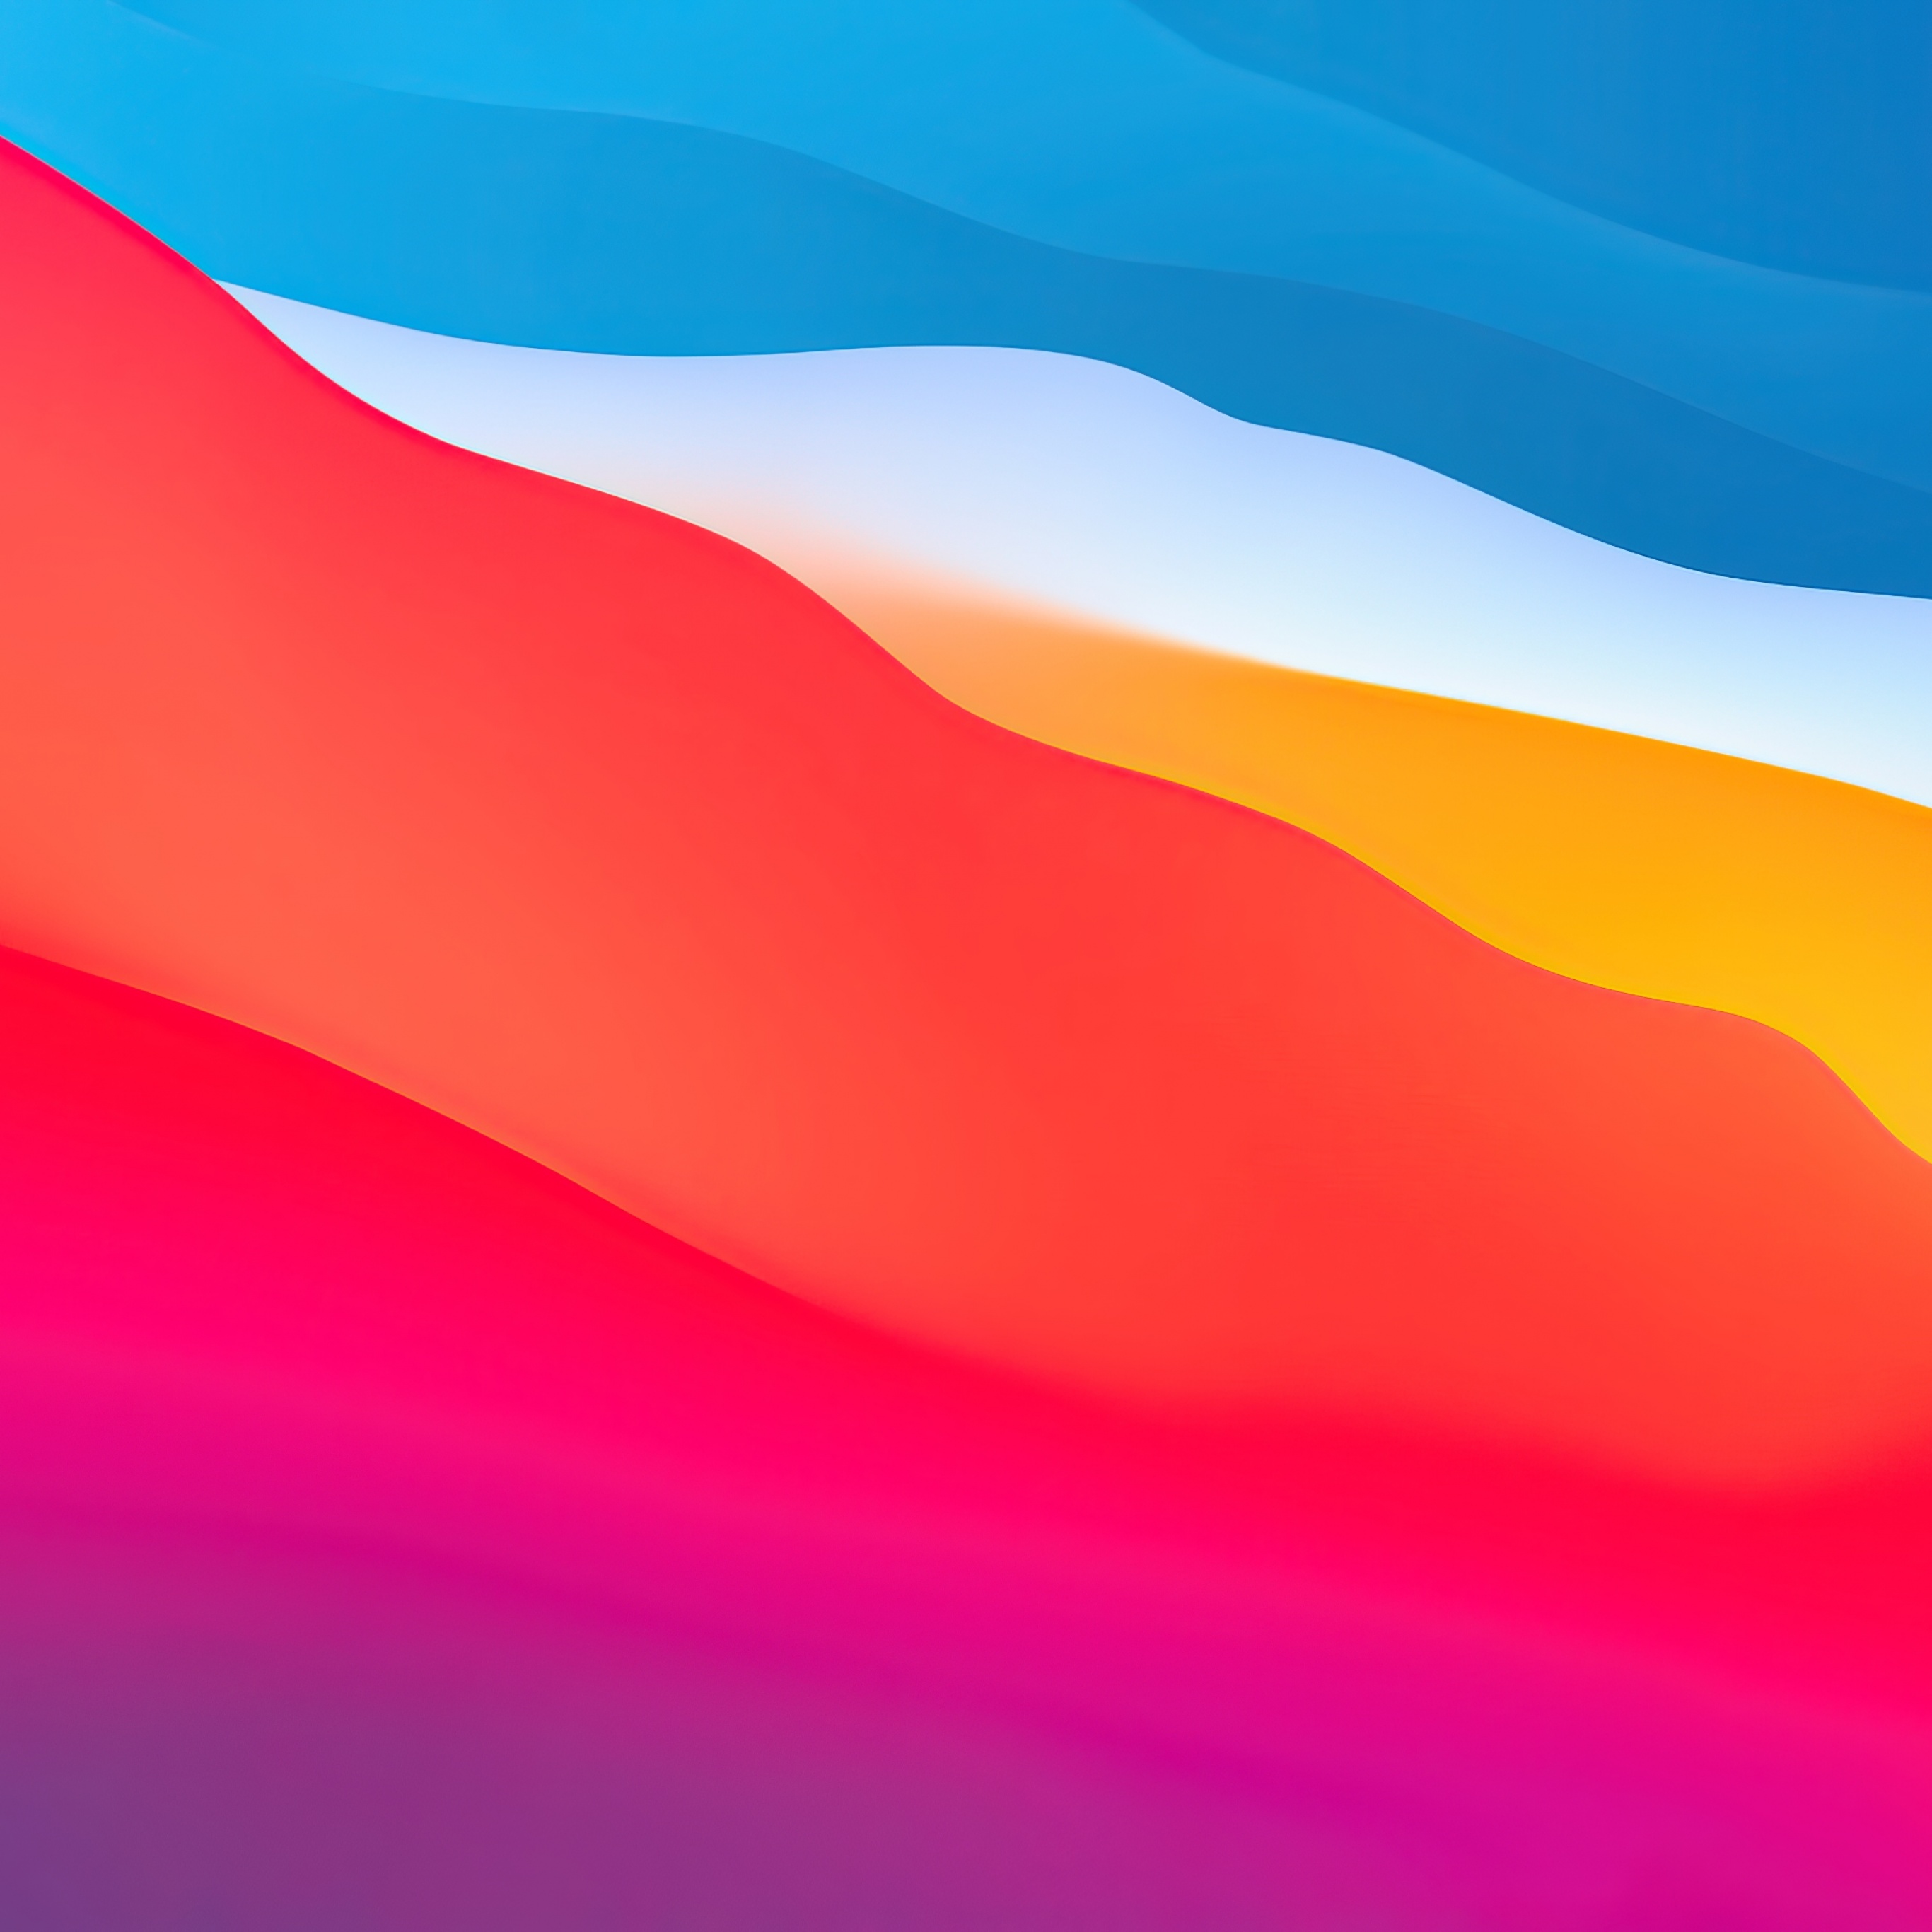 Nền đổ màu Gradient trôi chảy Layers cho macOS Big Sur 4K sẽ khiến cho bạn trải nghiệm thế giới kỹ thuật số một cách chân thực nhất. Với những vùng đổi màu liên tục, bạn sẽ có cảm giác như đang bơi trong một dòng sông màu sắc đầy mê hoặc.